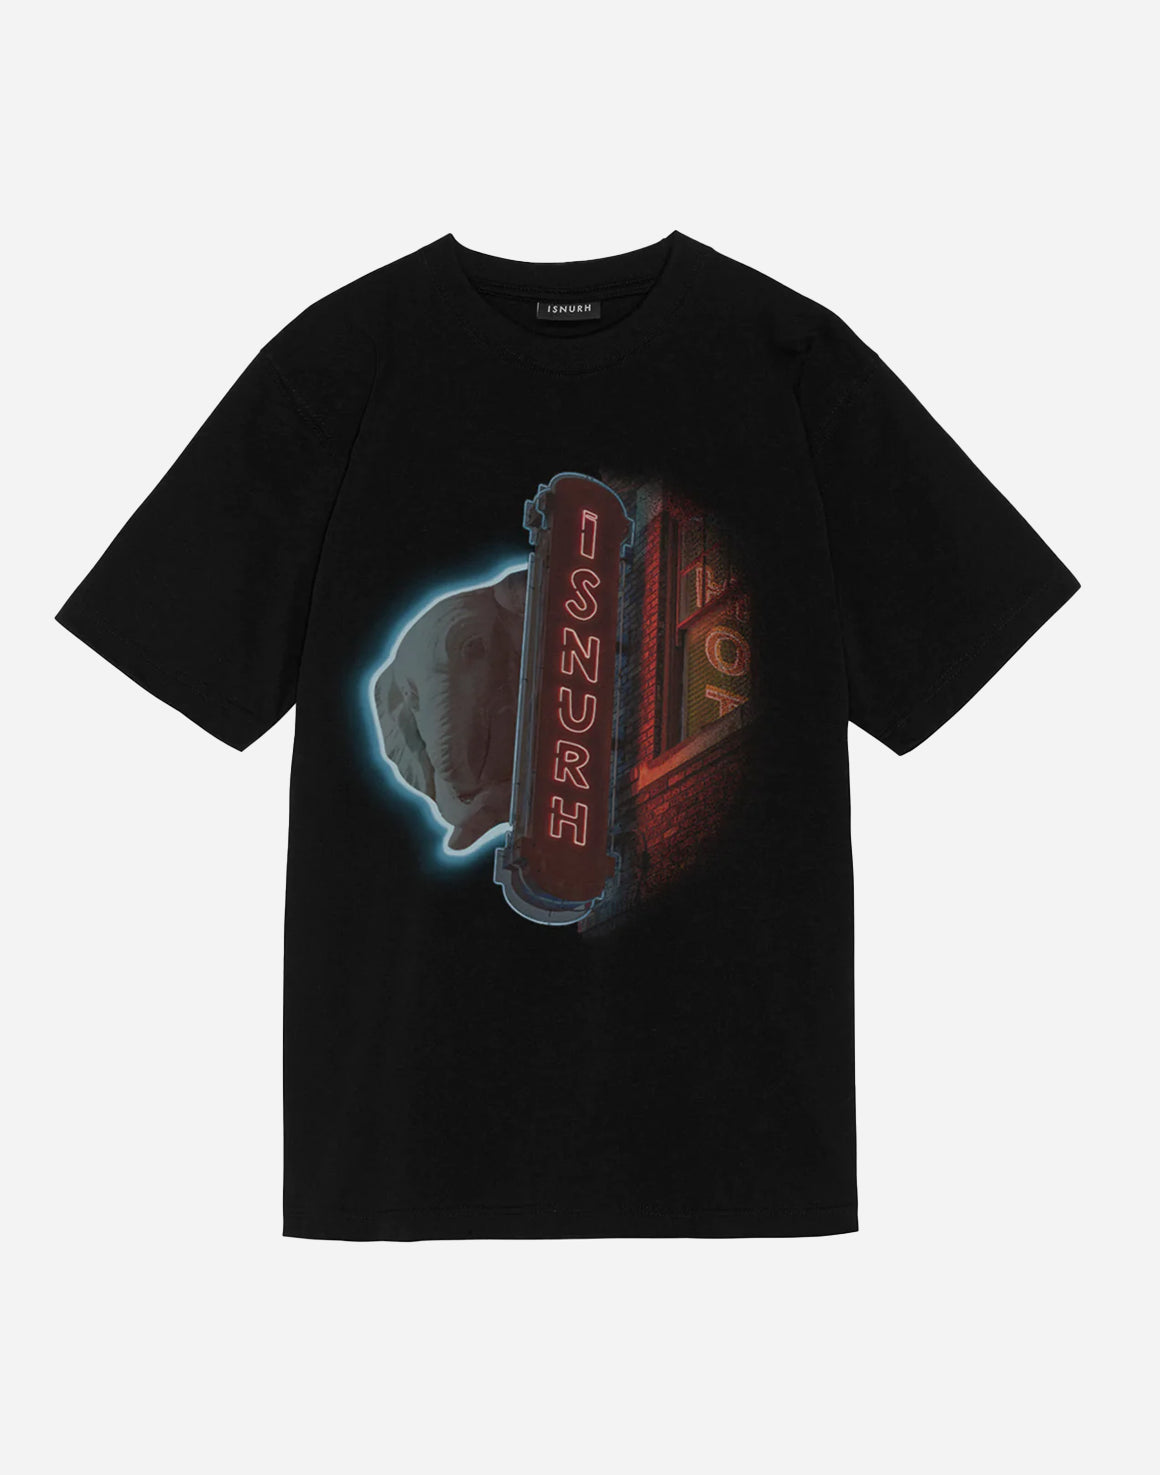 Bredgave T-shirt - Sort - ISNURH - Kul og Koks